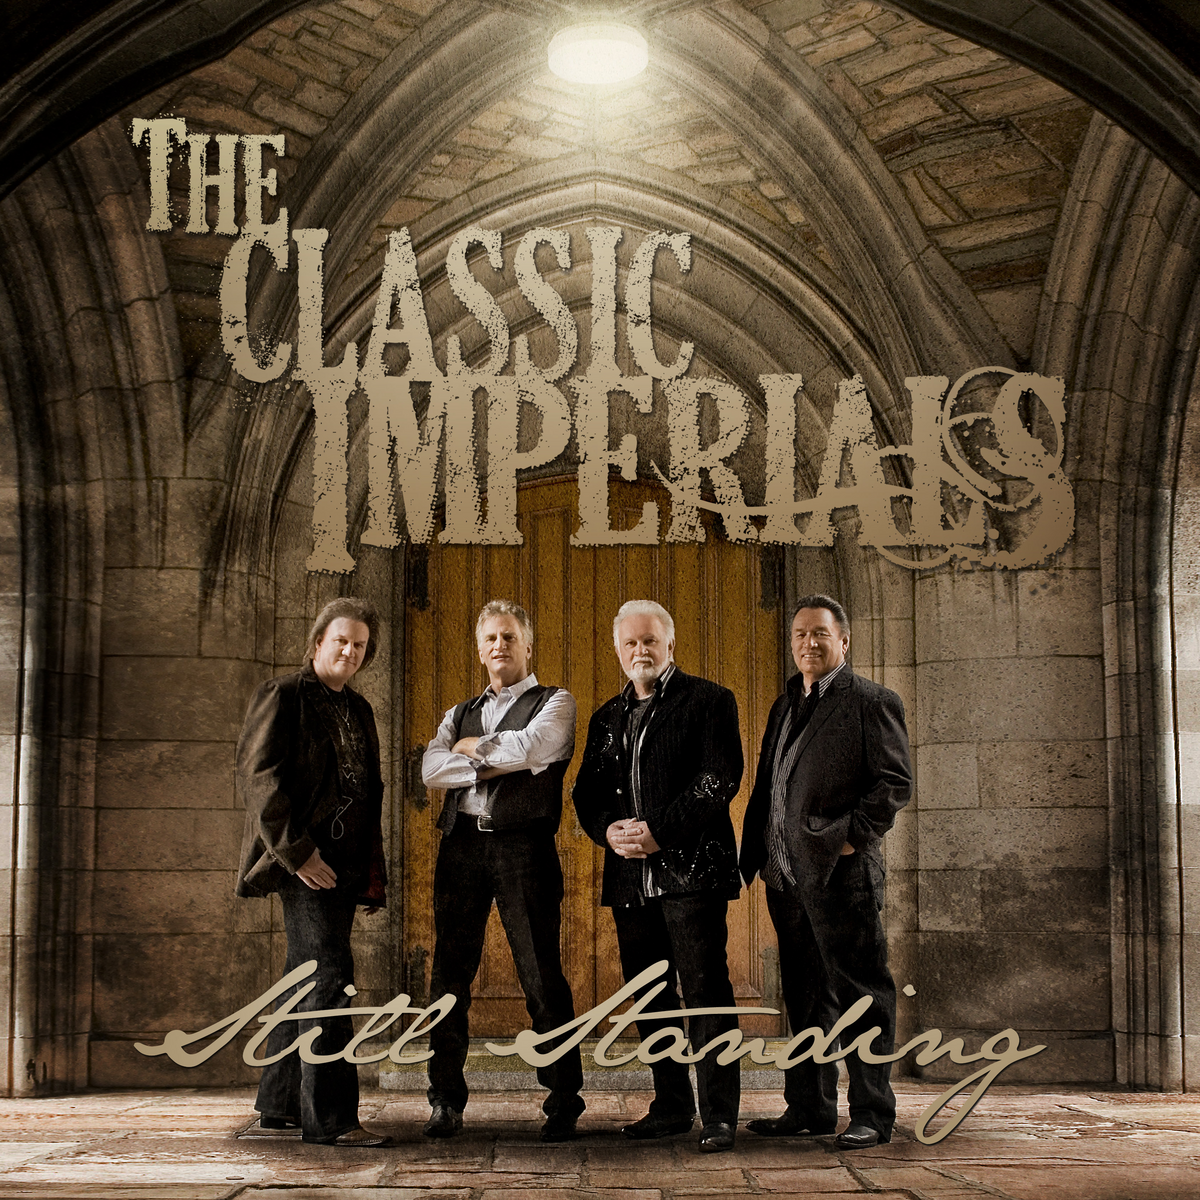 The Imperials Quartet